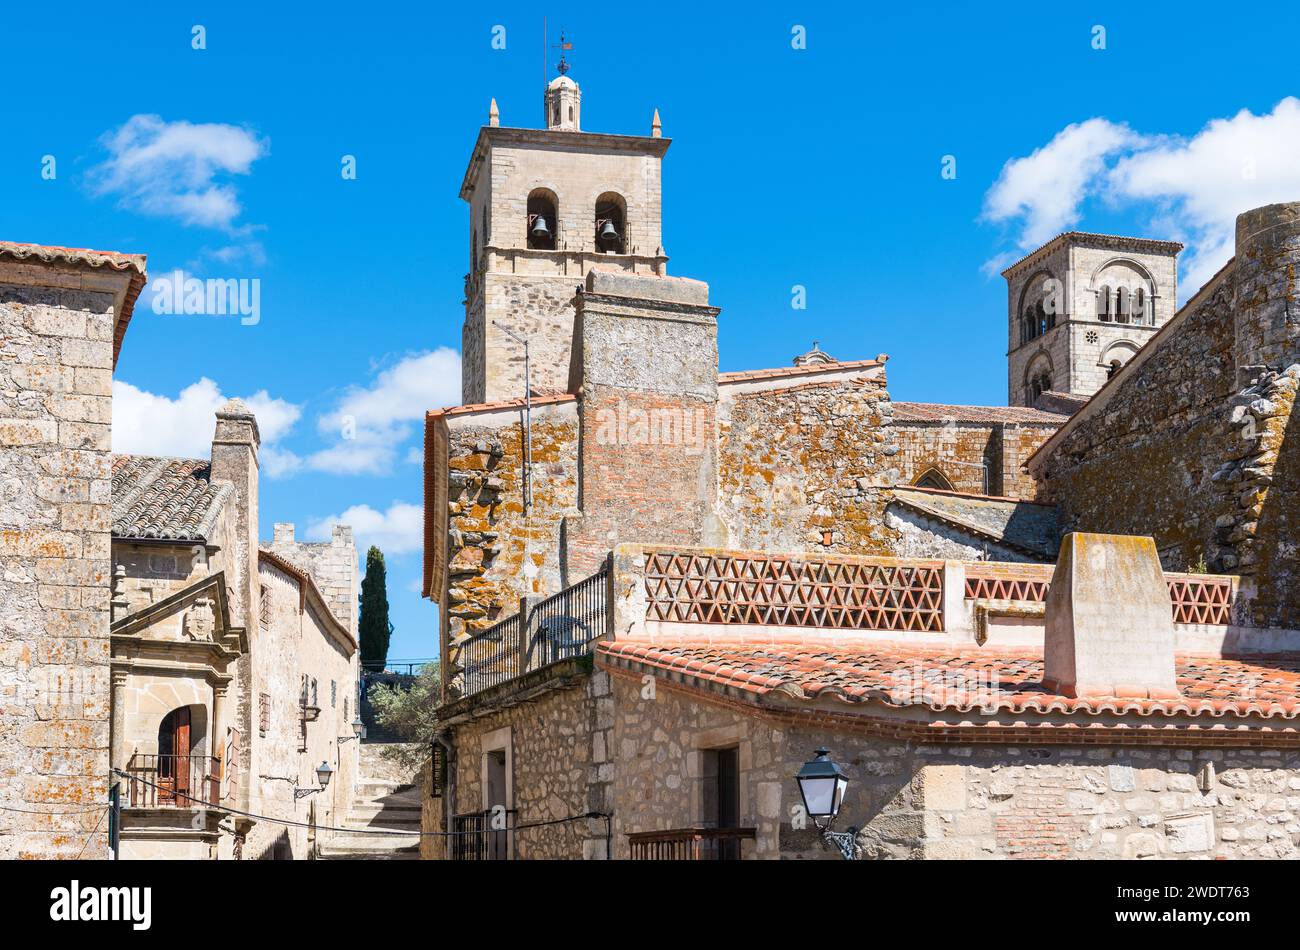 Straßen von Trujillo, mit dem Balkon von Casa de los Chaves Calderon auf der linken Seite und Türmen von Iglesia de Santa Maria la Mayor auf der rechten Seite Stockfoto